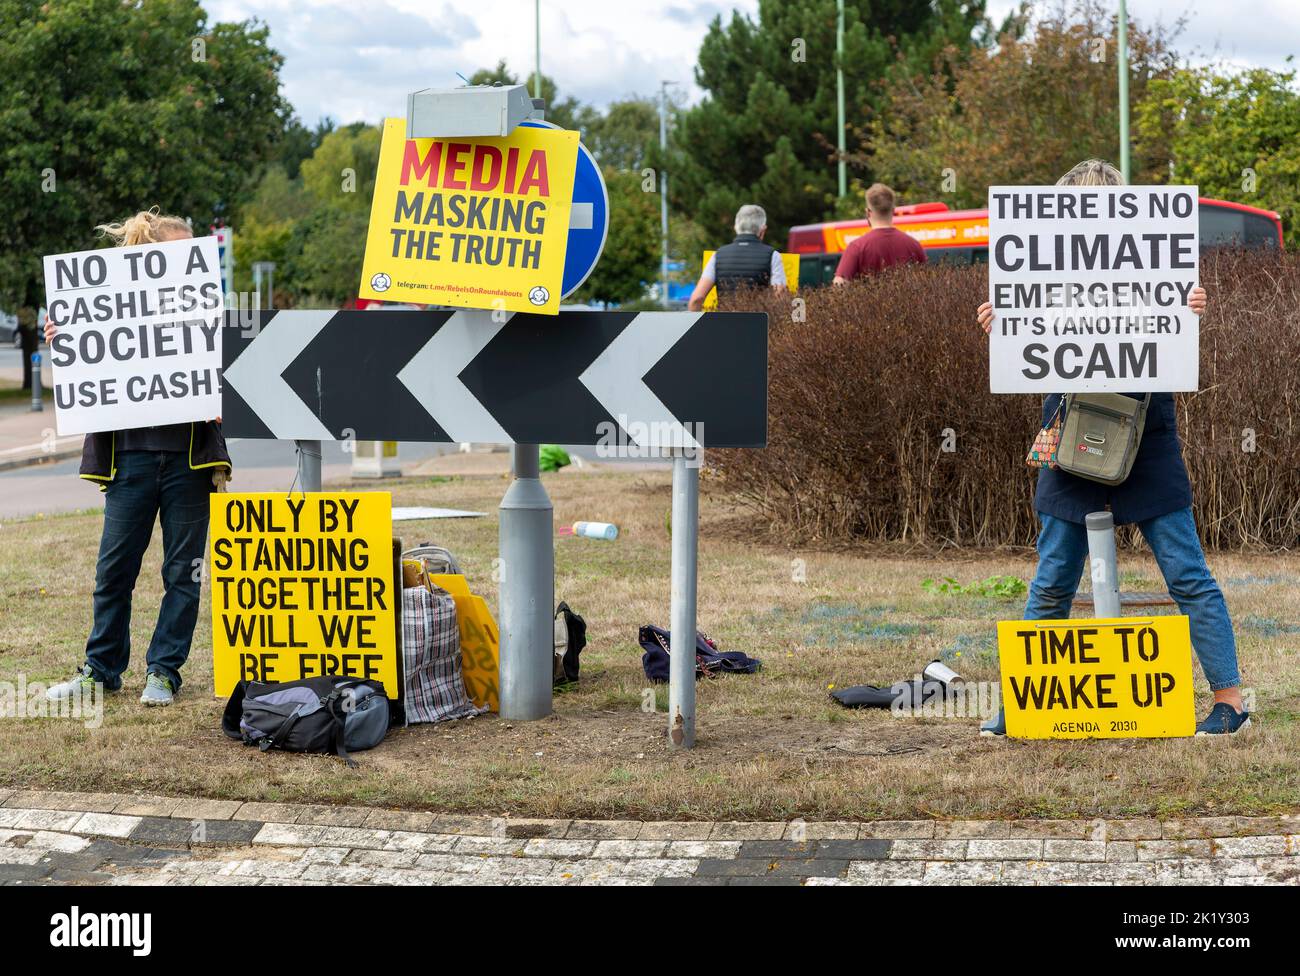 Protesta contro la lunga rotonda, Martlesham, Suffolk, Inghilterra, Regno Unito l'emergenza climatica è una truffa, no alla società senza contanti Foto Stock